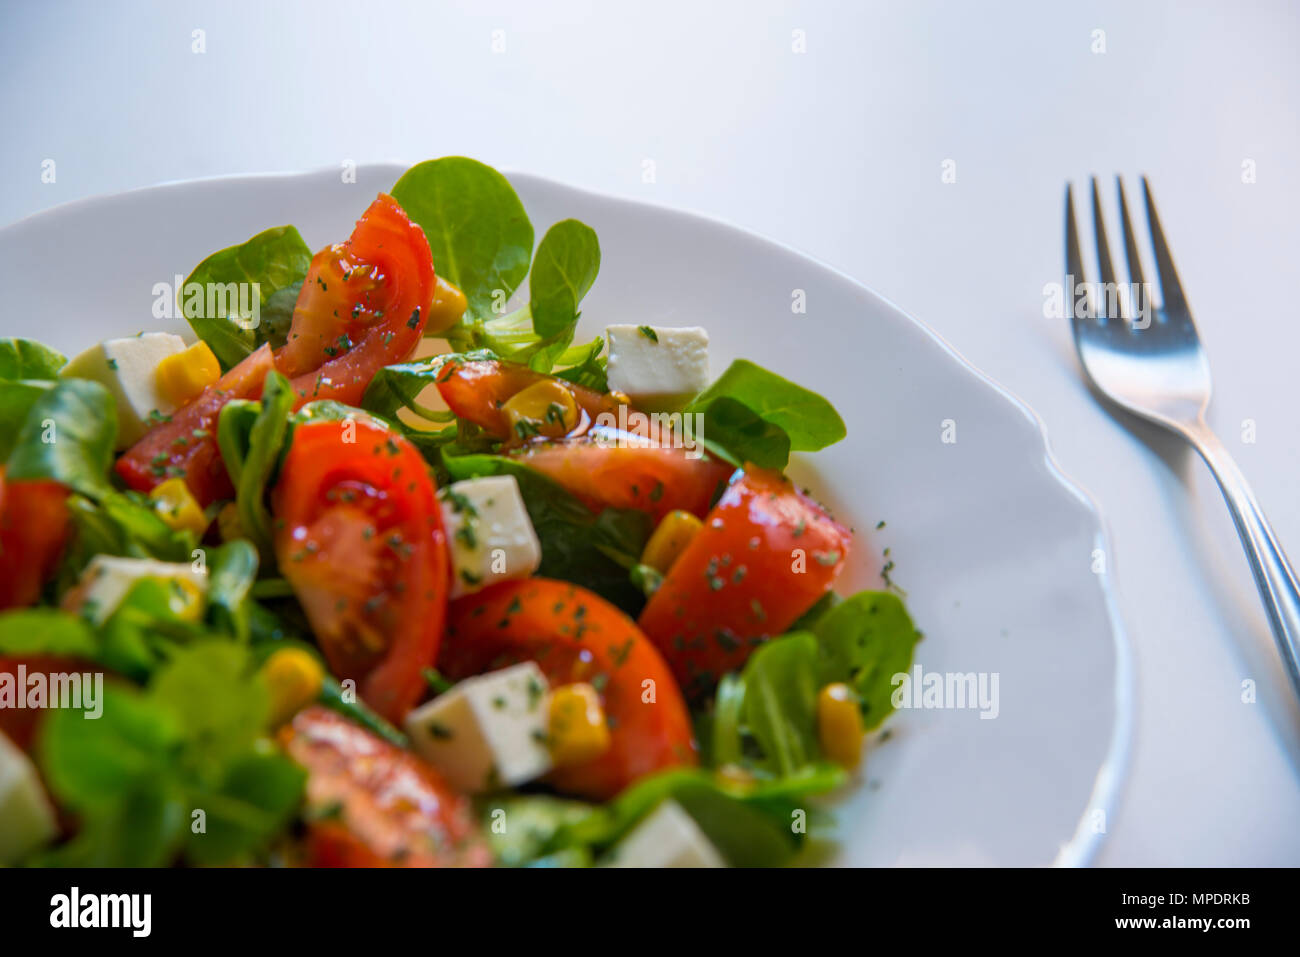 Mediterranean diet: mixed salad. Stock Photo